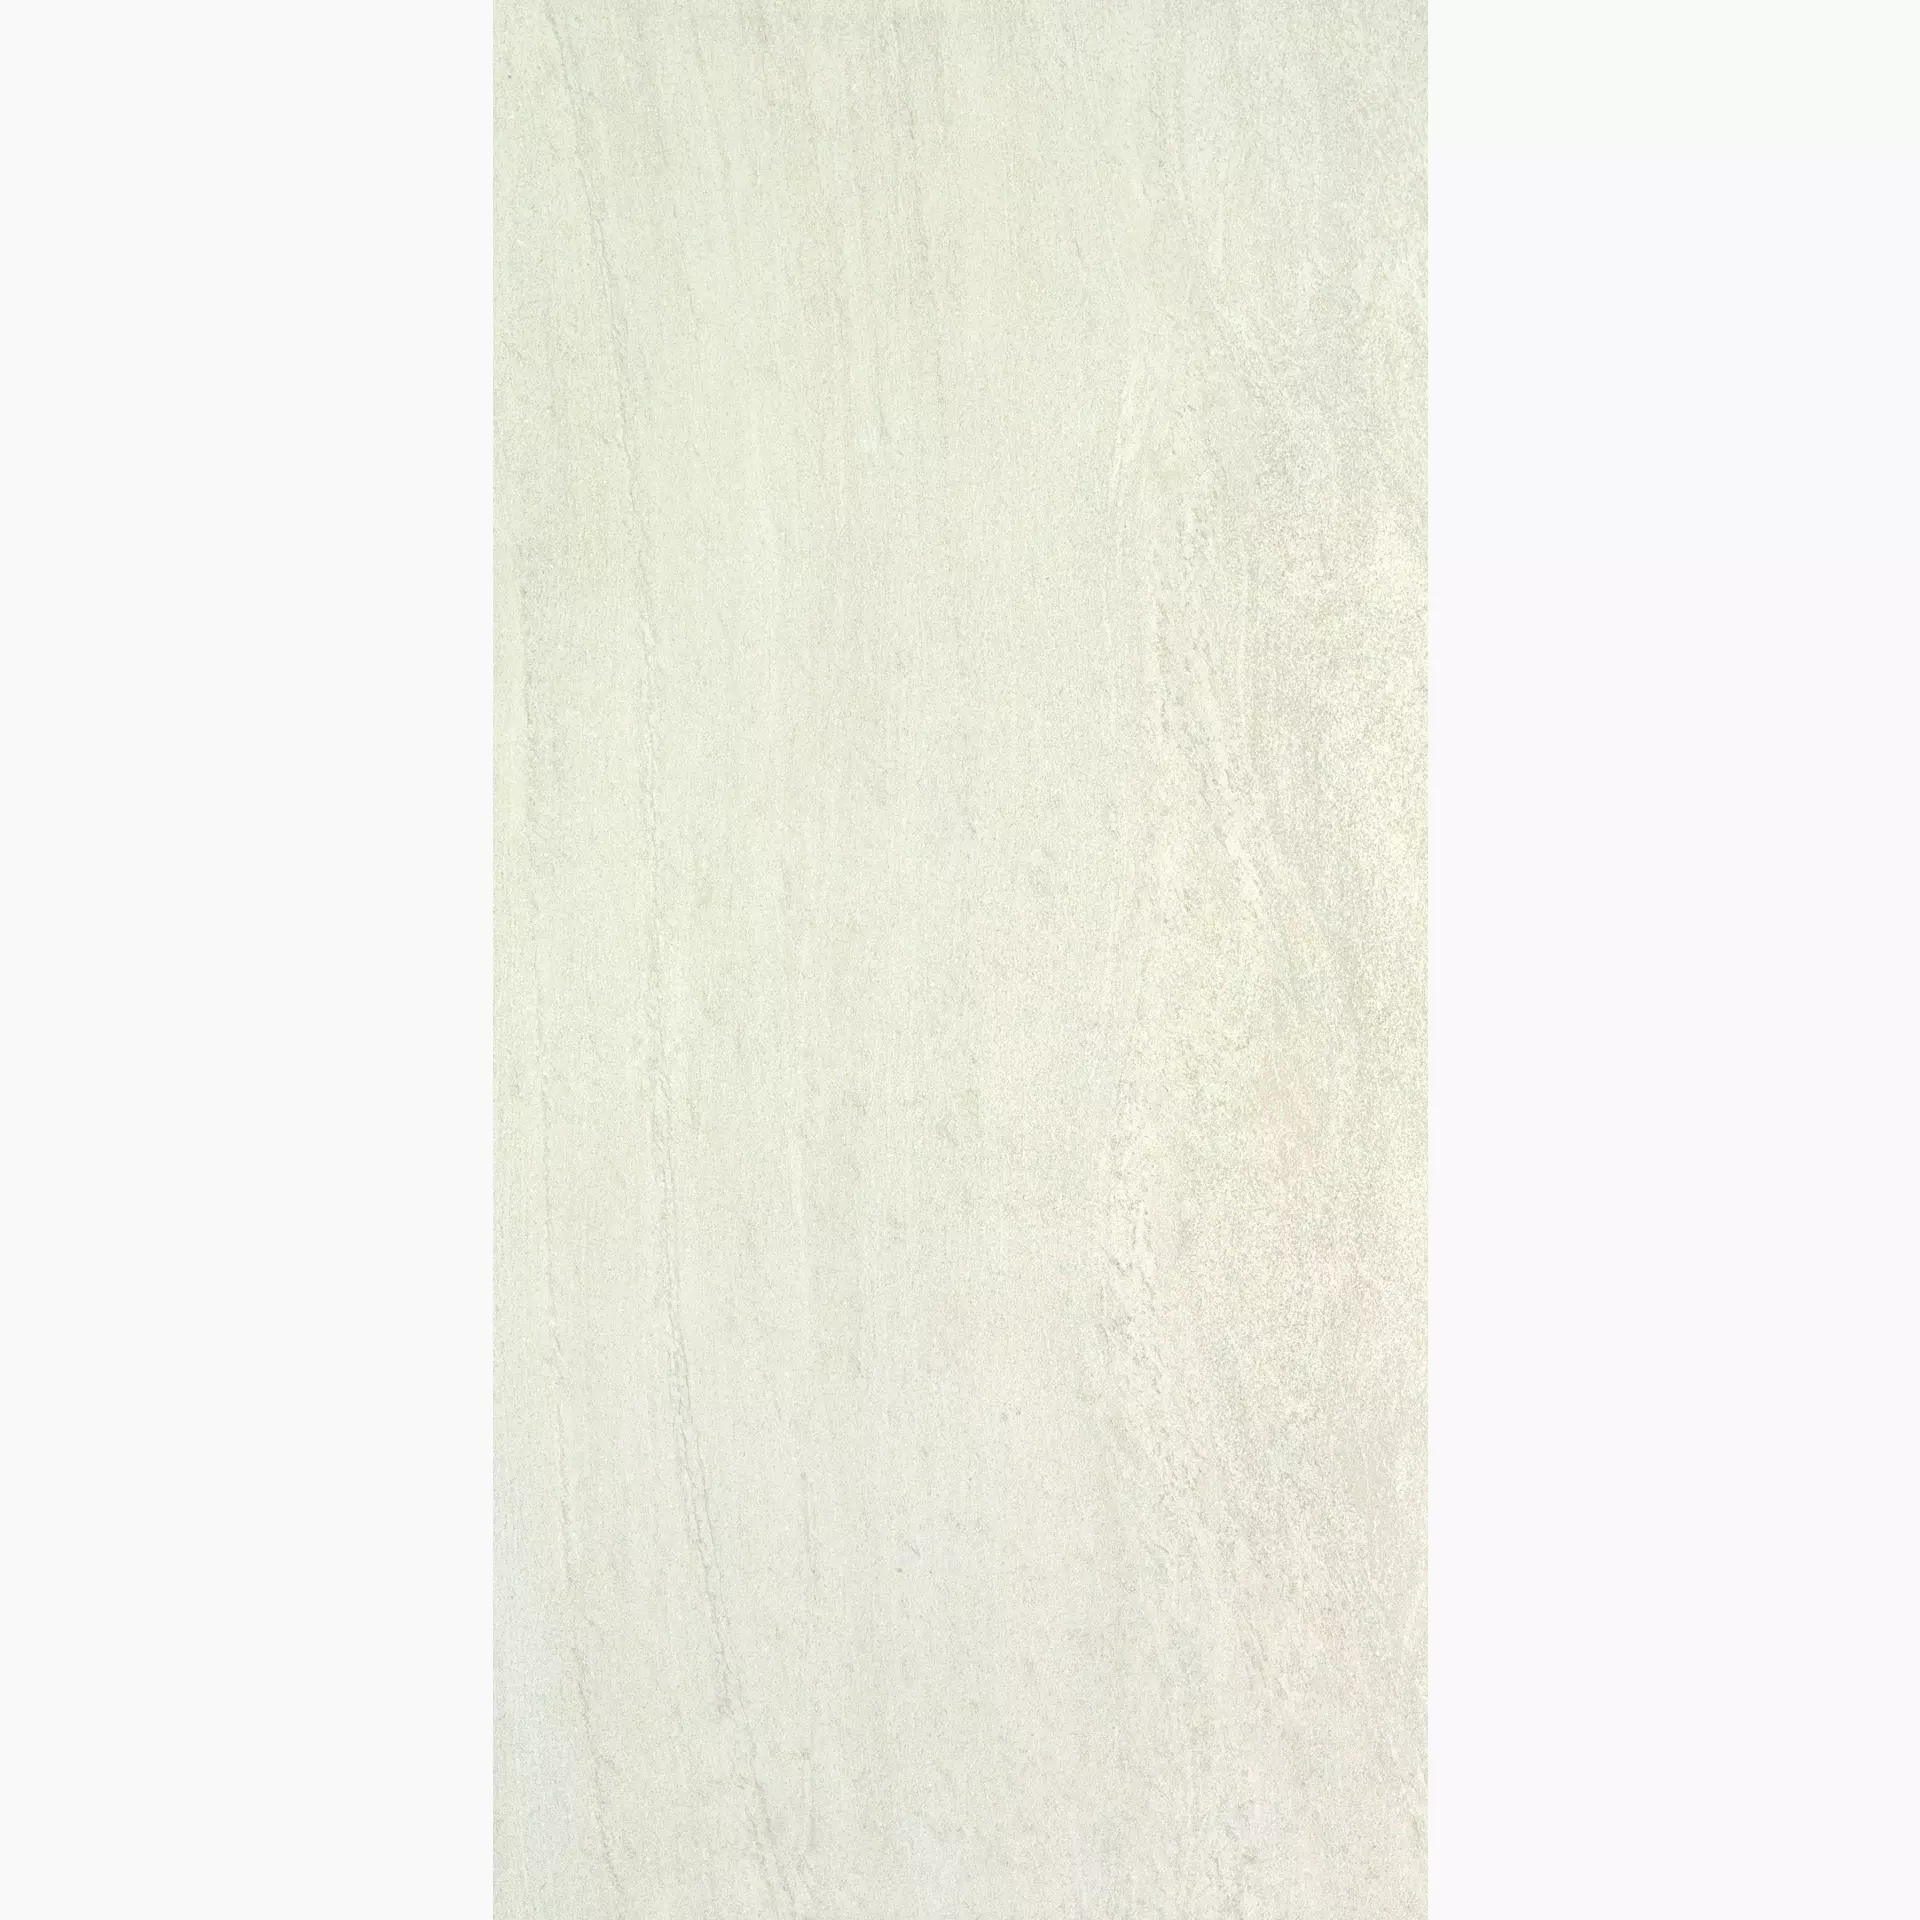 Ergon Stone Project White Naturale Falda E6L3 60x120cm rectified 9,5mm